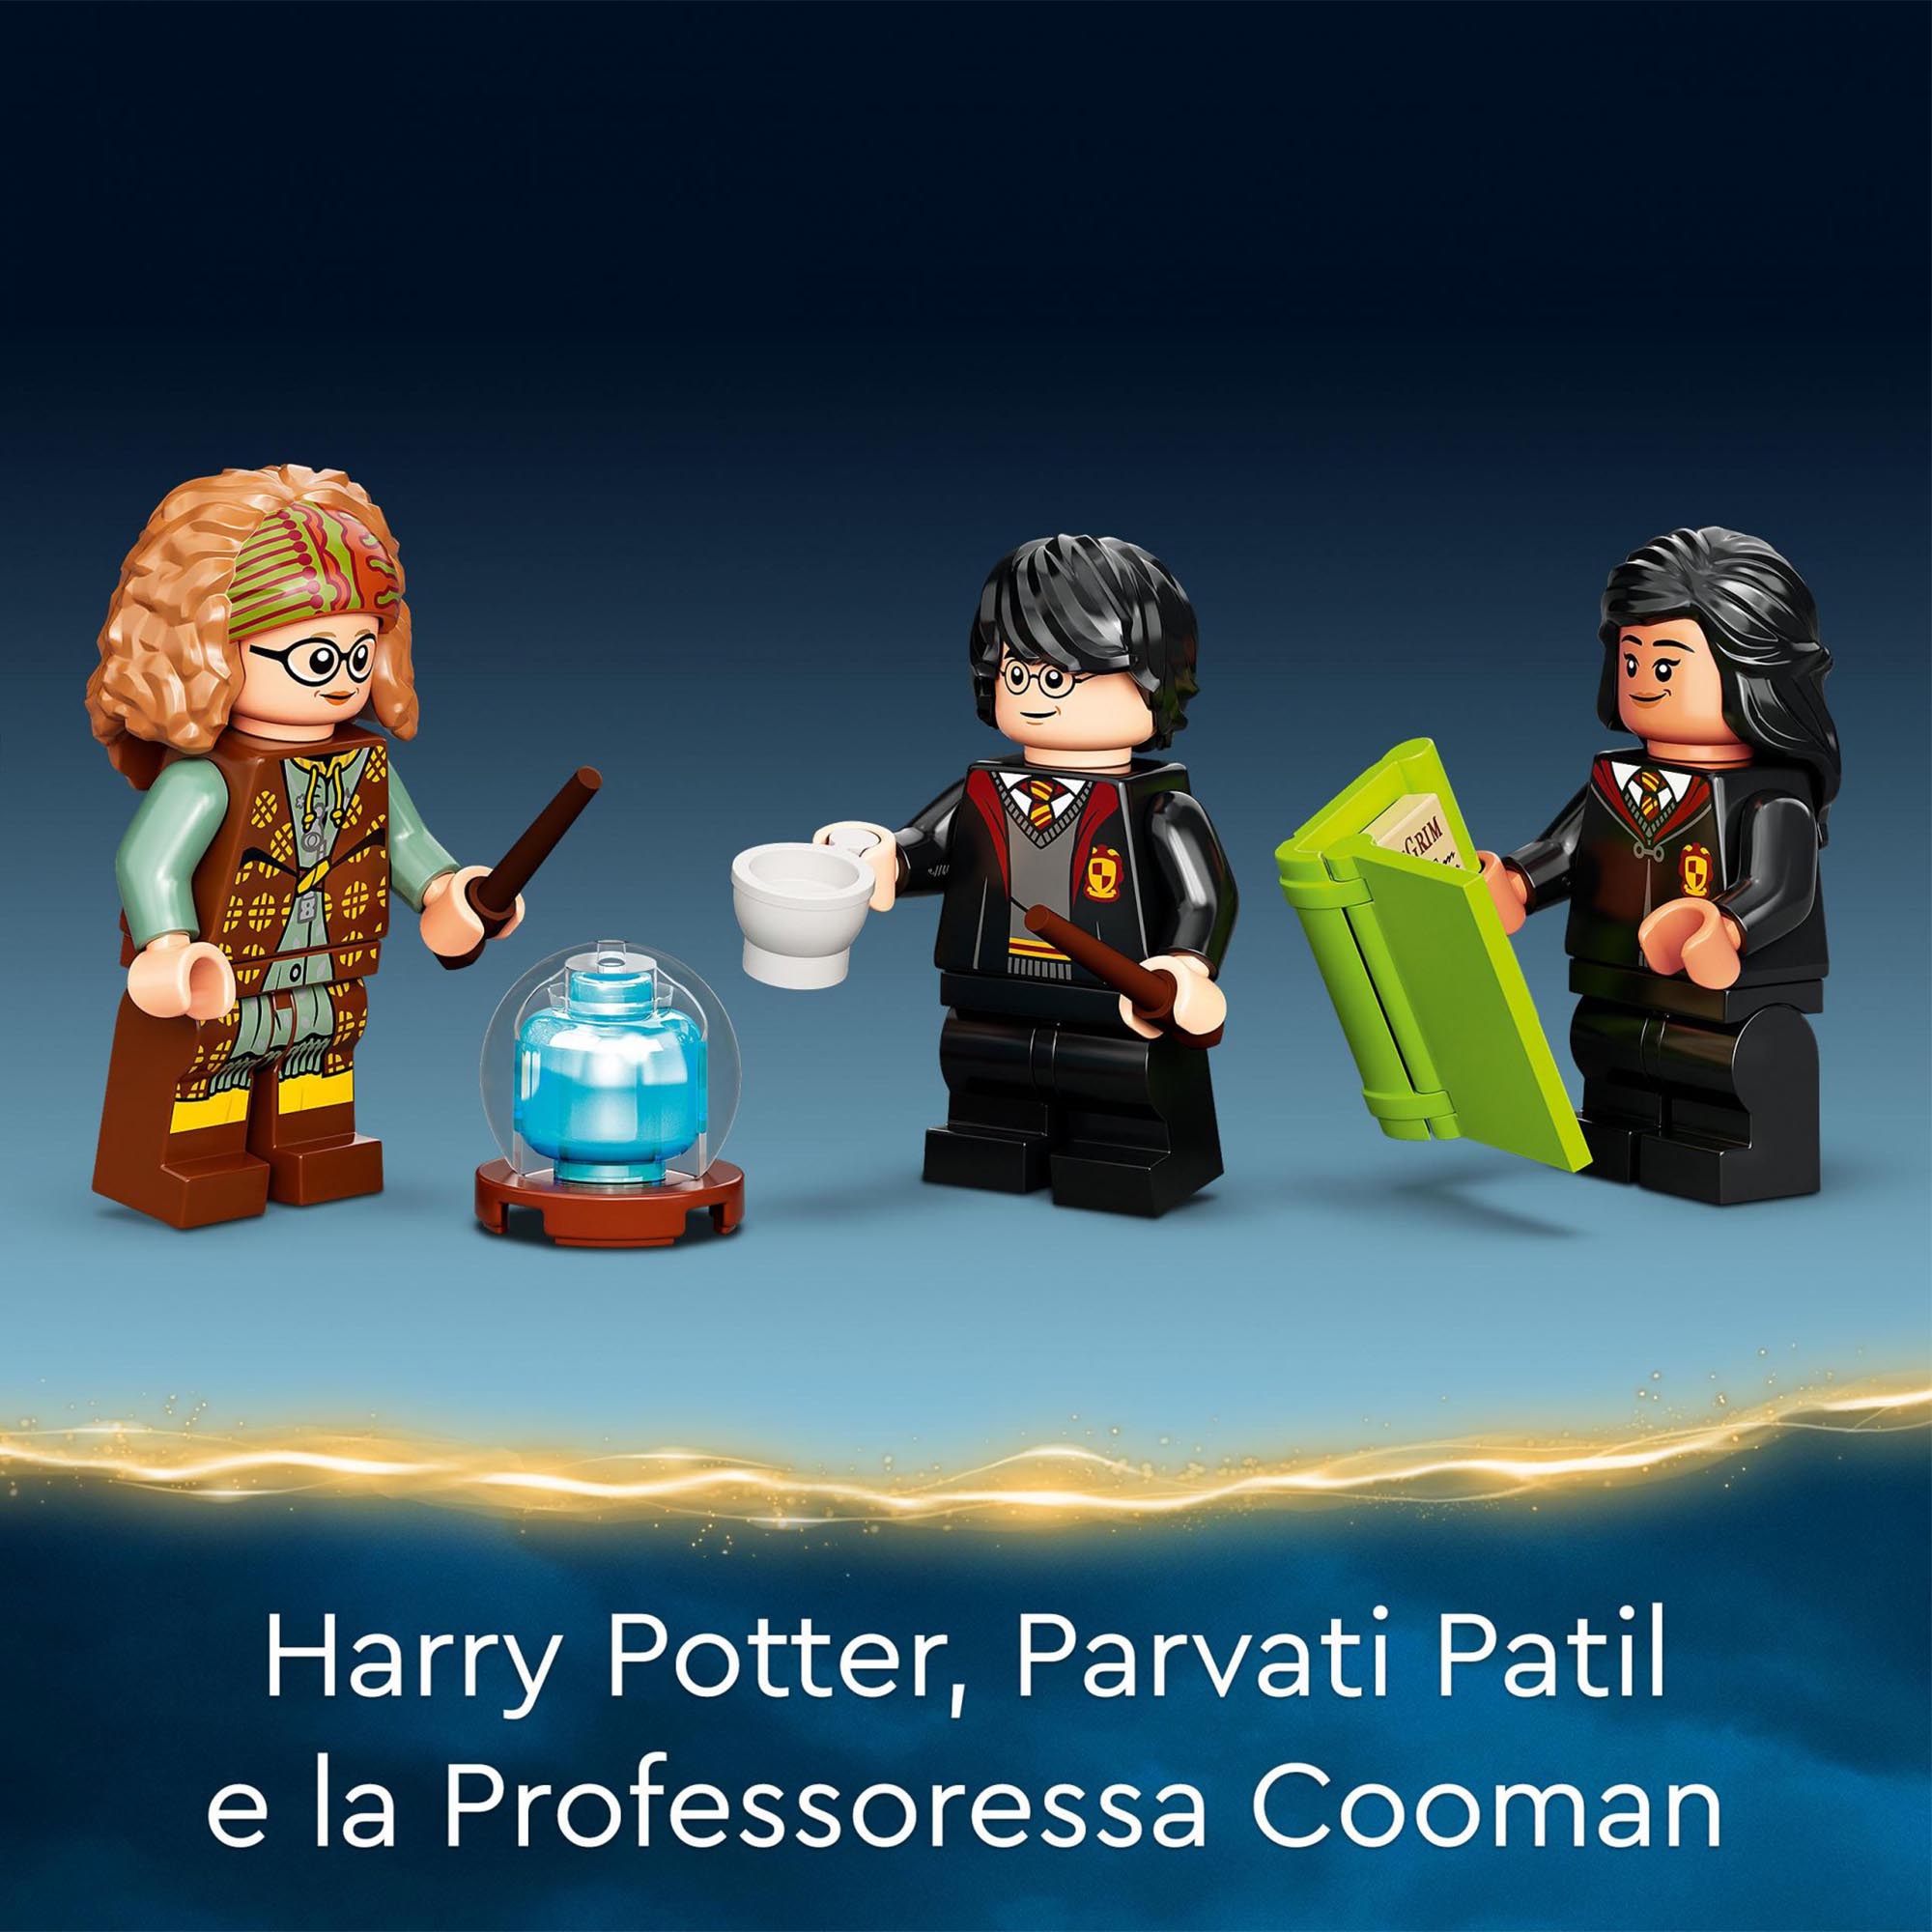 LEGO Harry Potter Lezione di Divinazione a Hogwarts, Libro di Magia, Regalo da C 76396, , large